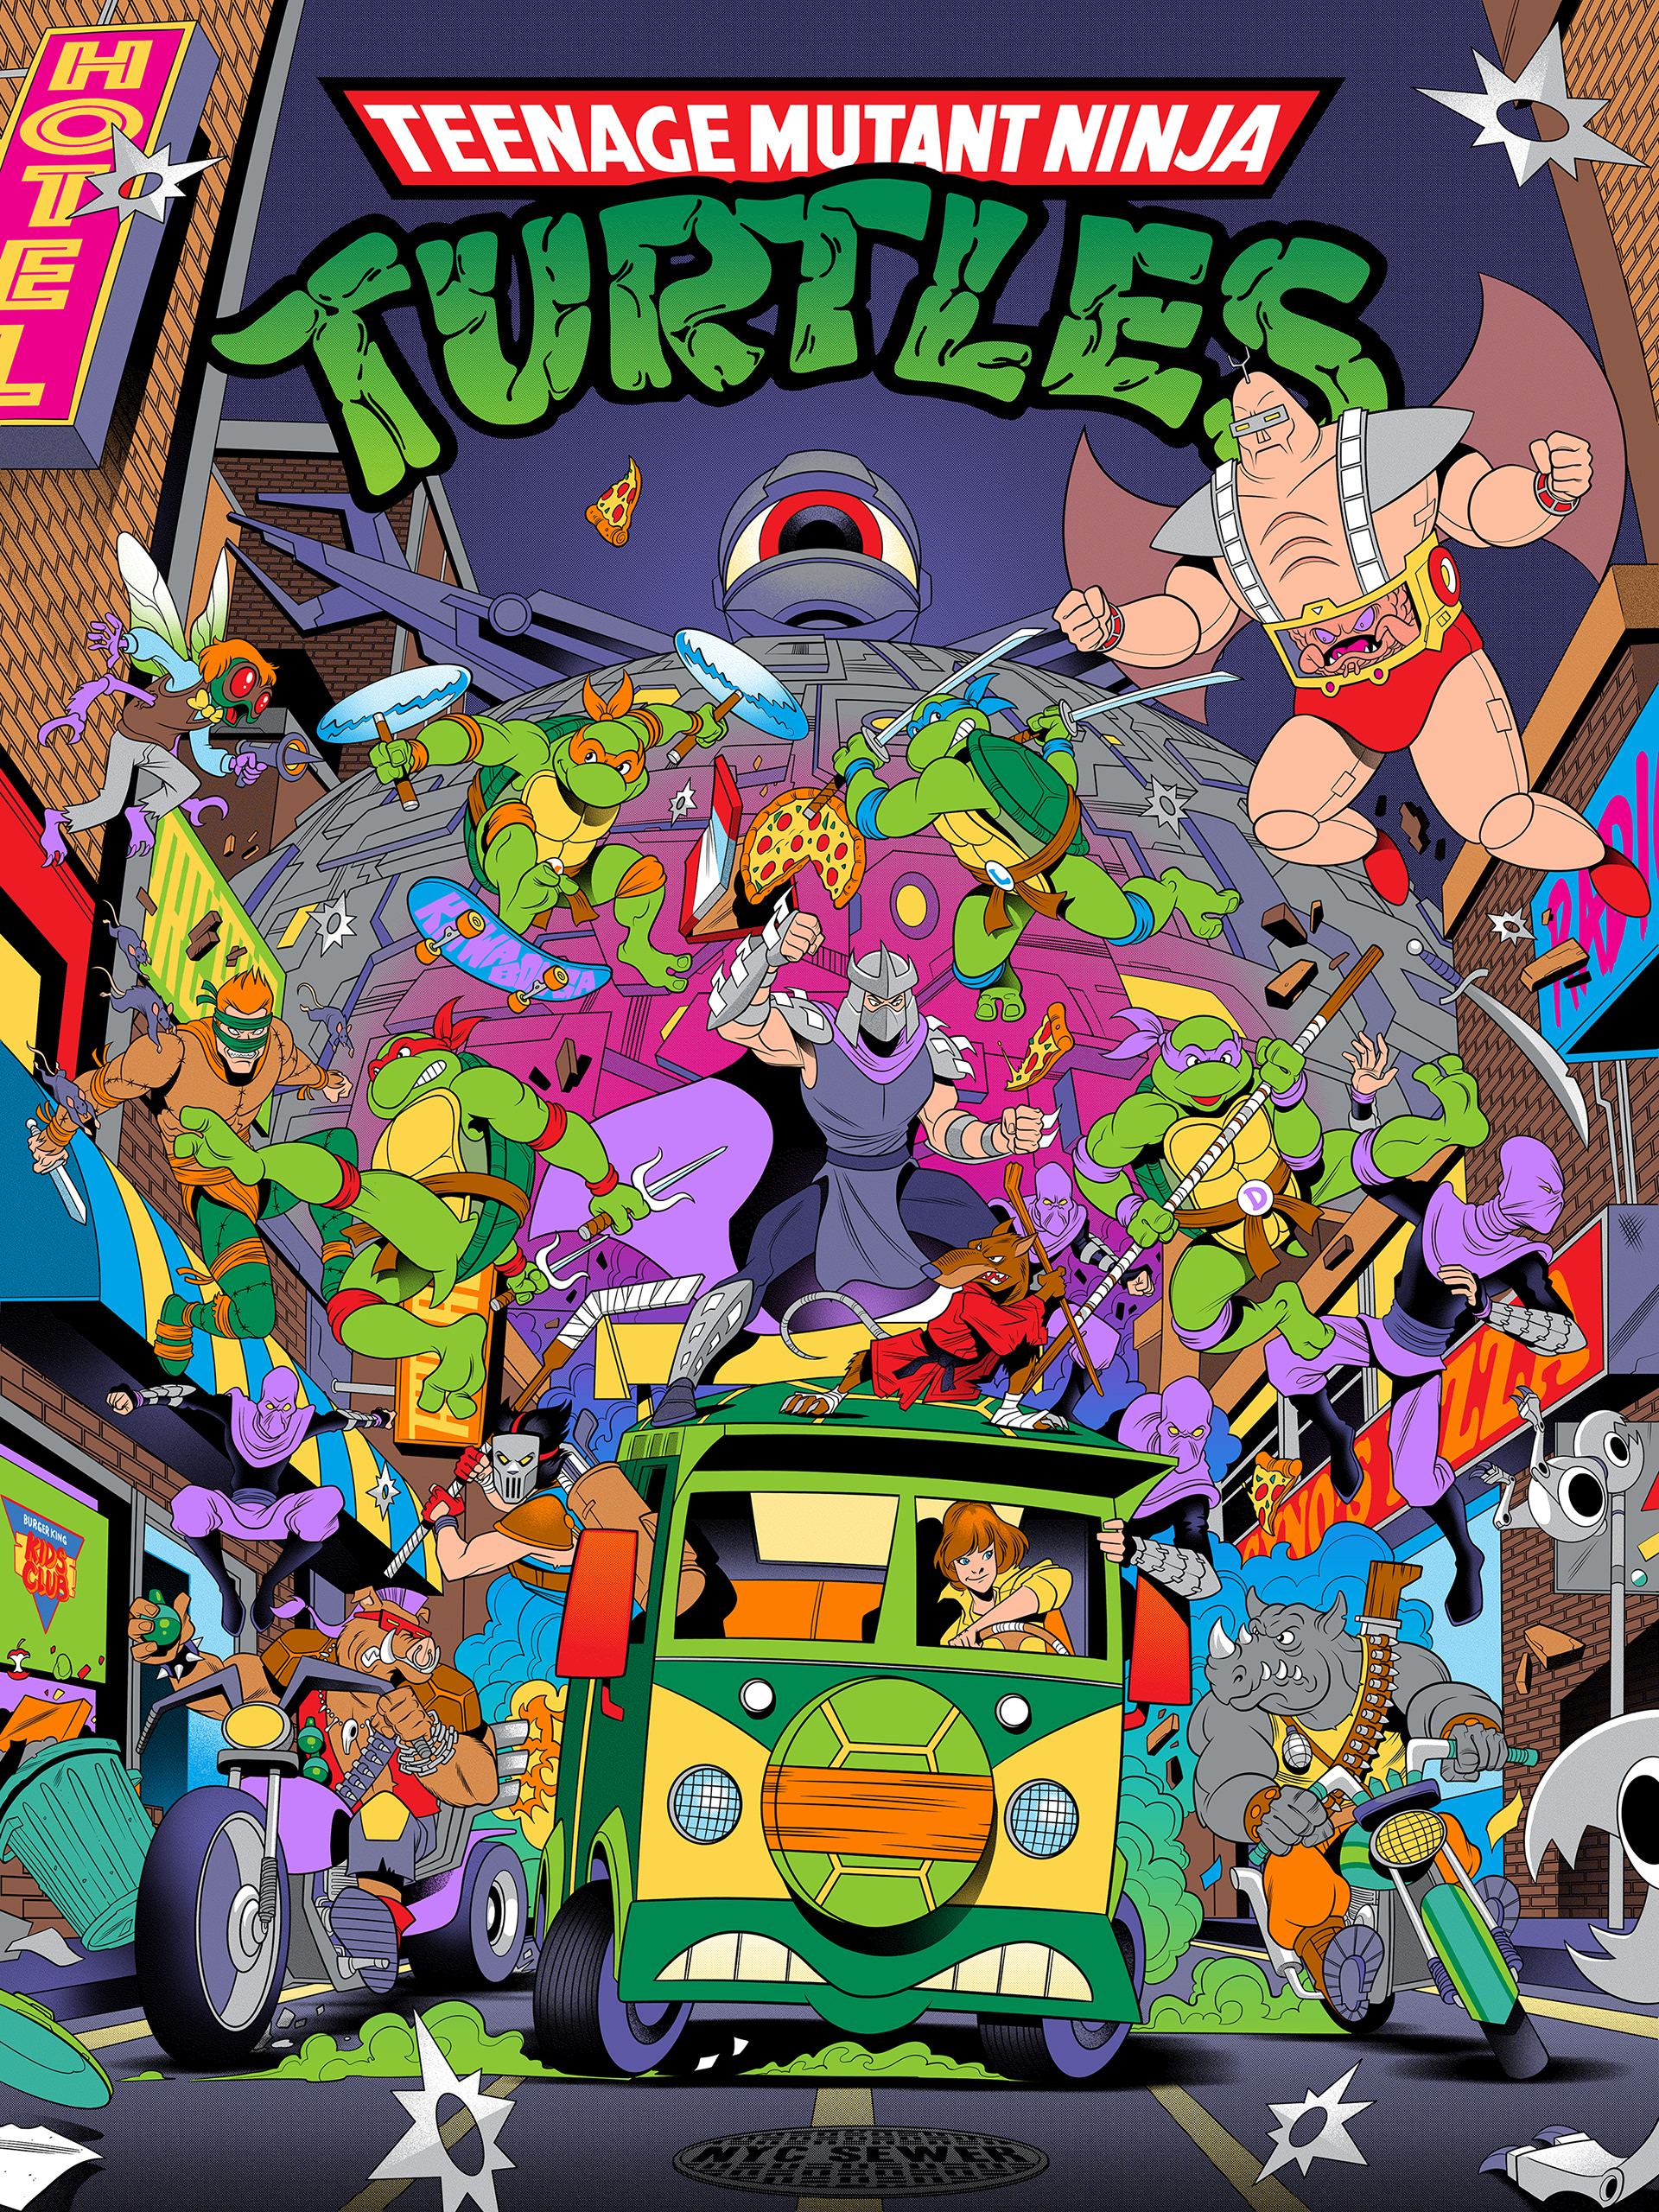 TMNT Teenage Mutant Ninja Turtles  Ninja turtles cartoon, Teenage